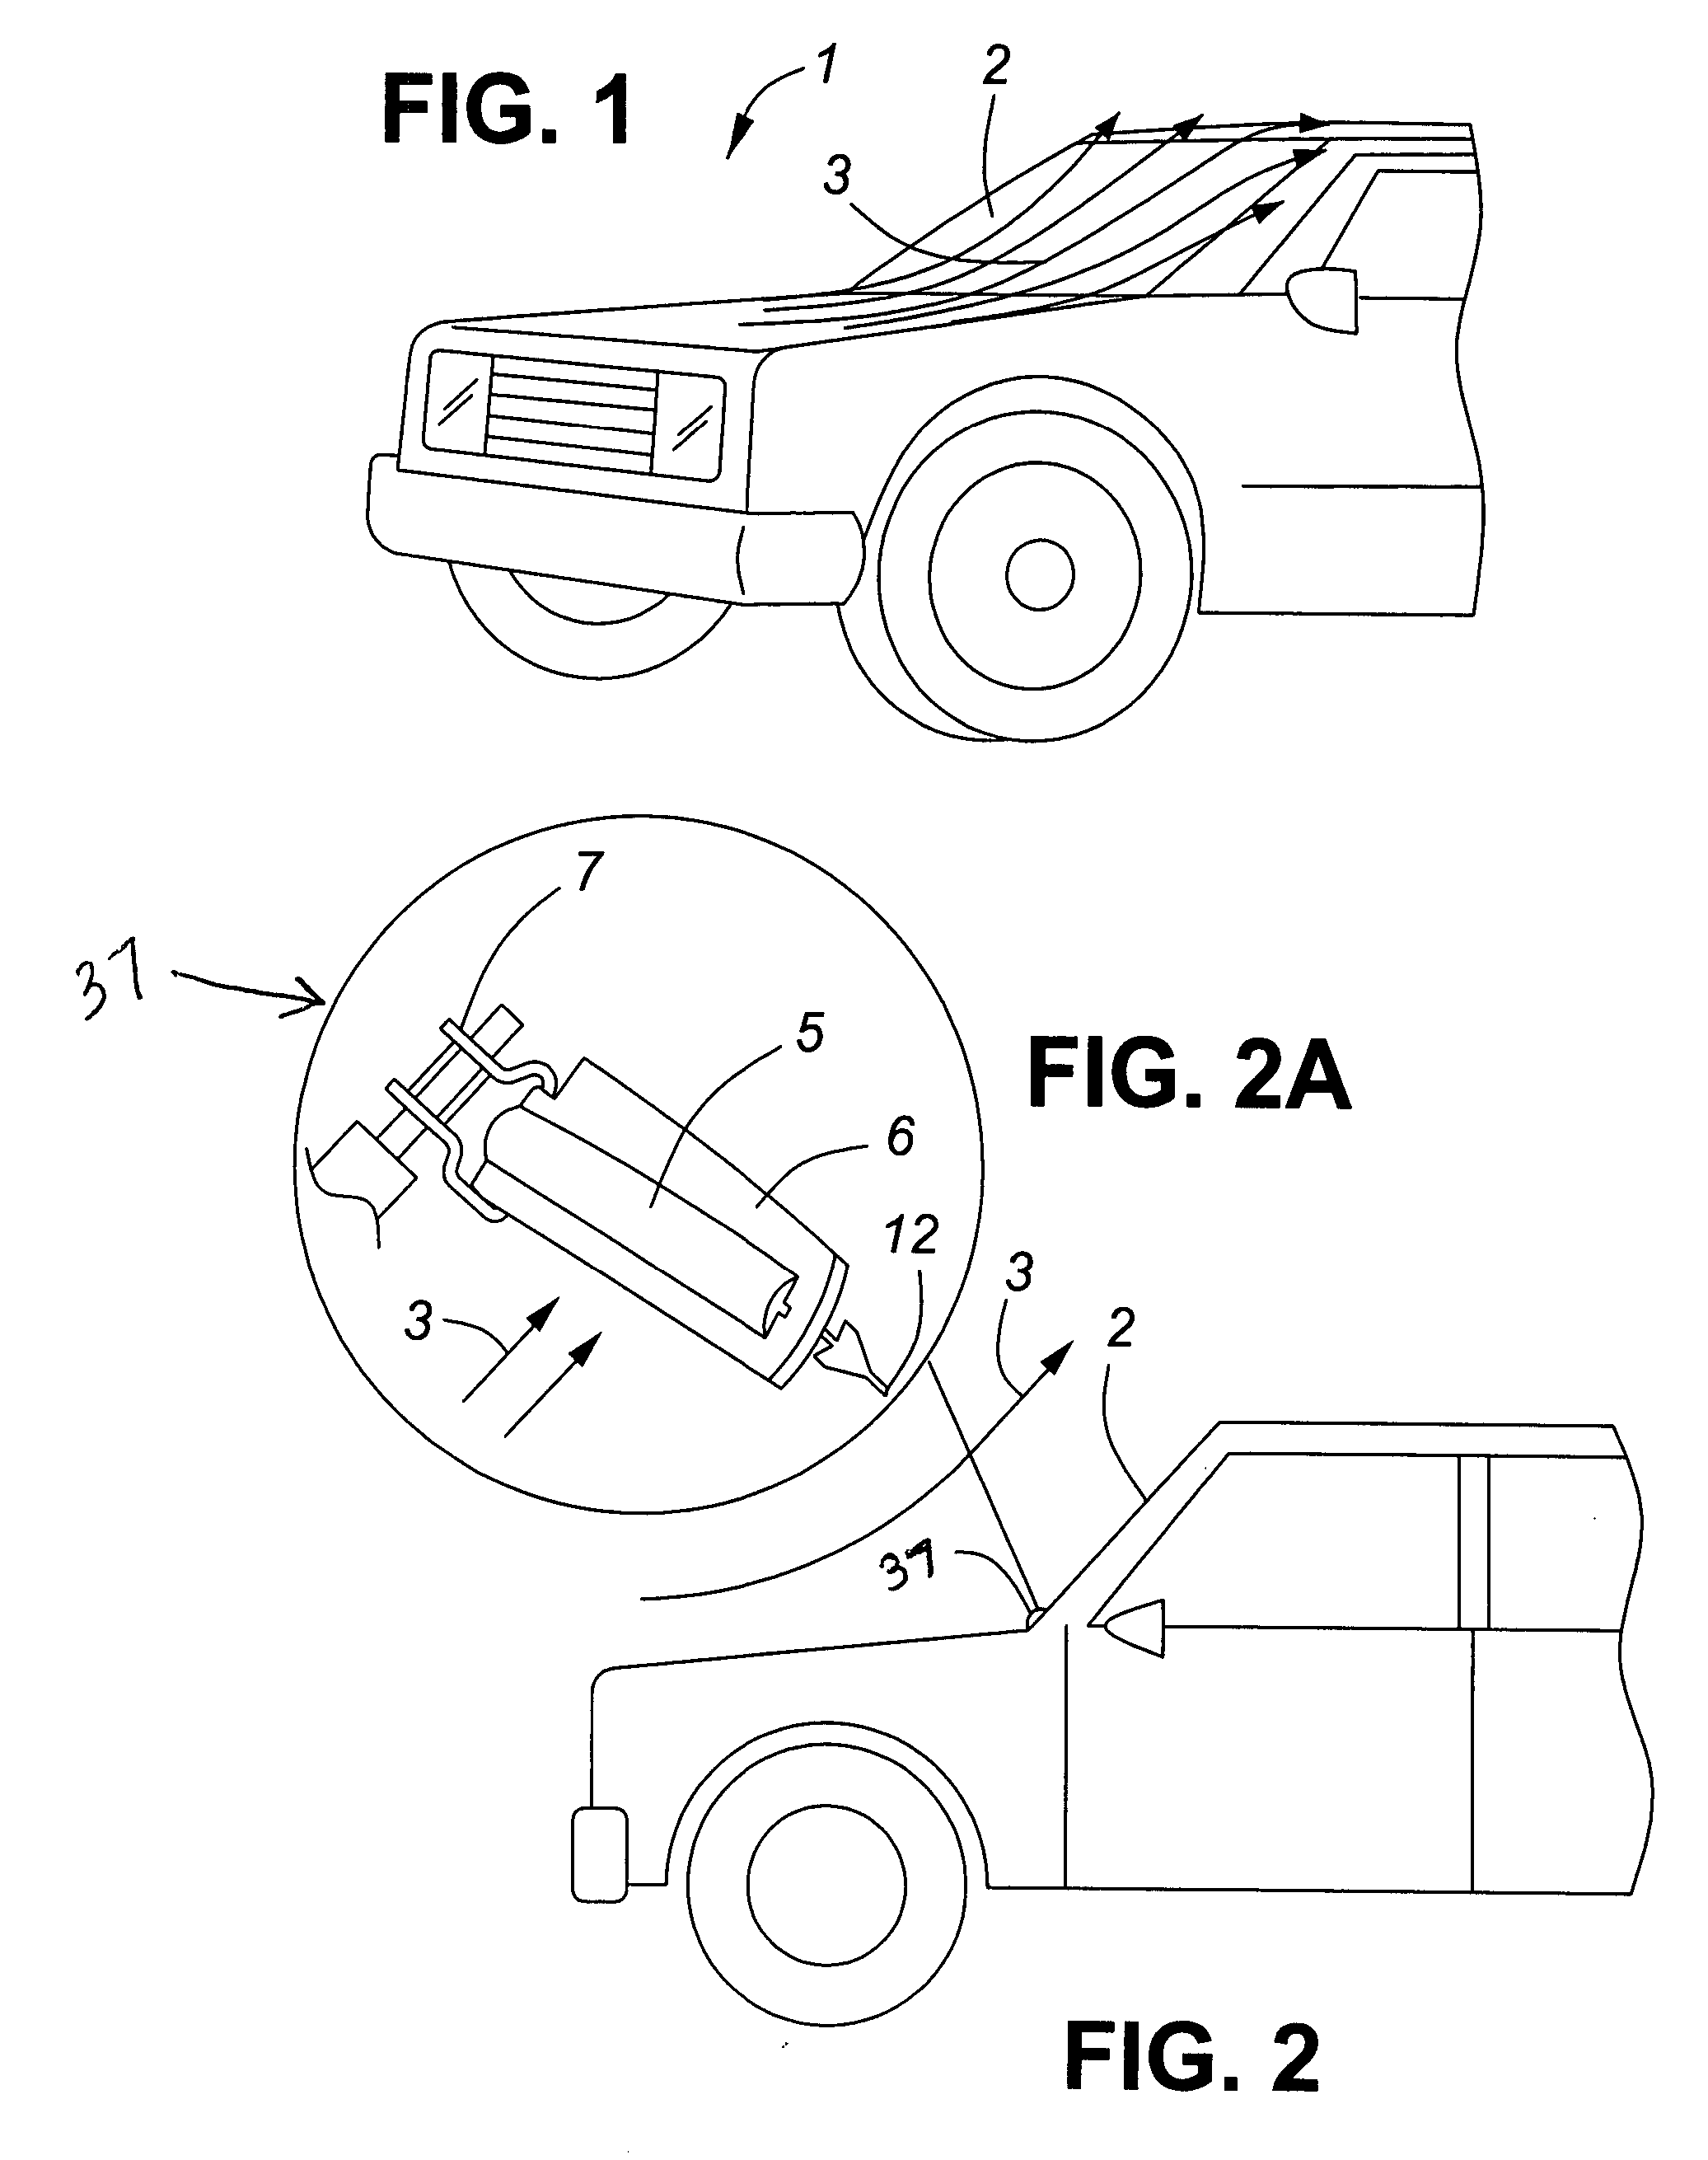 Automotive wiper assembly